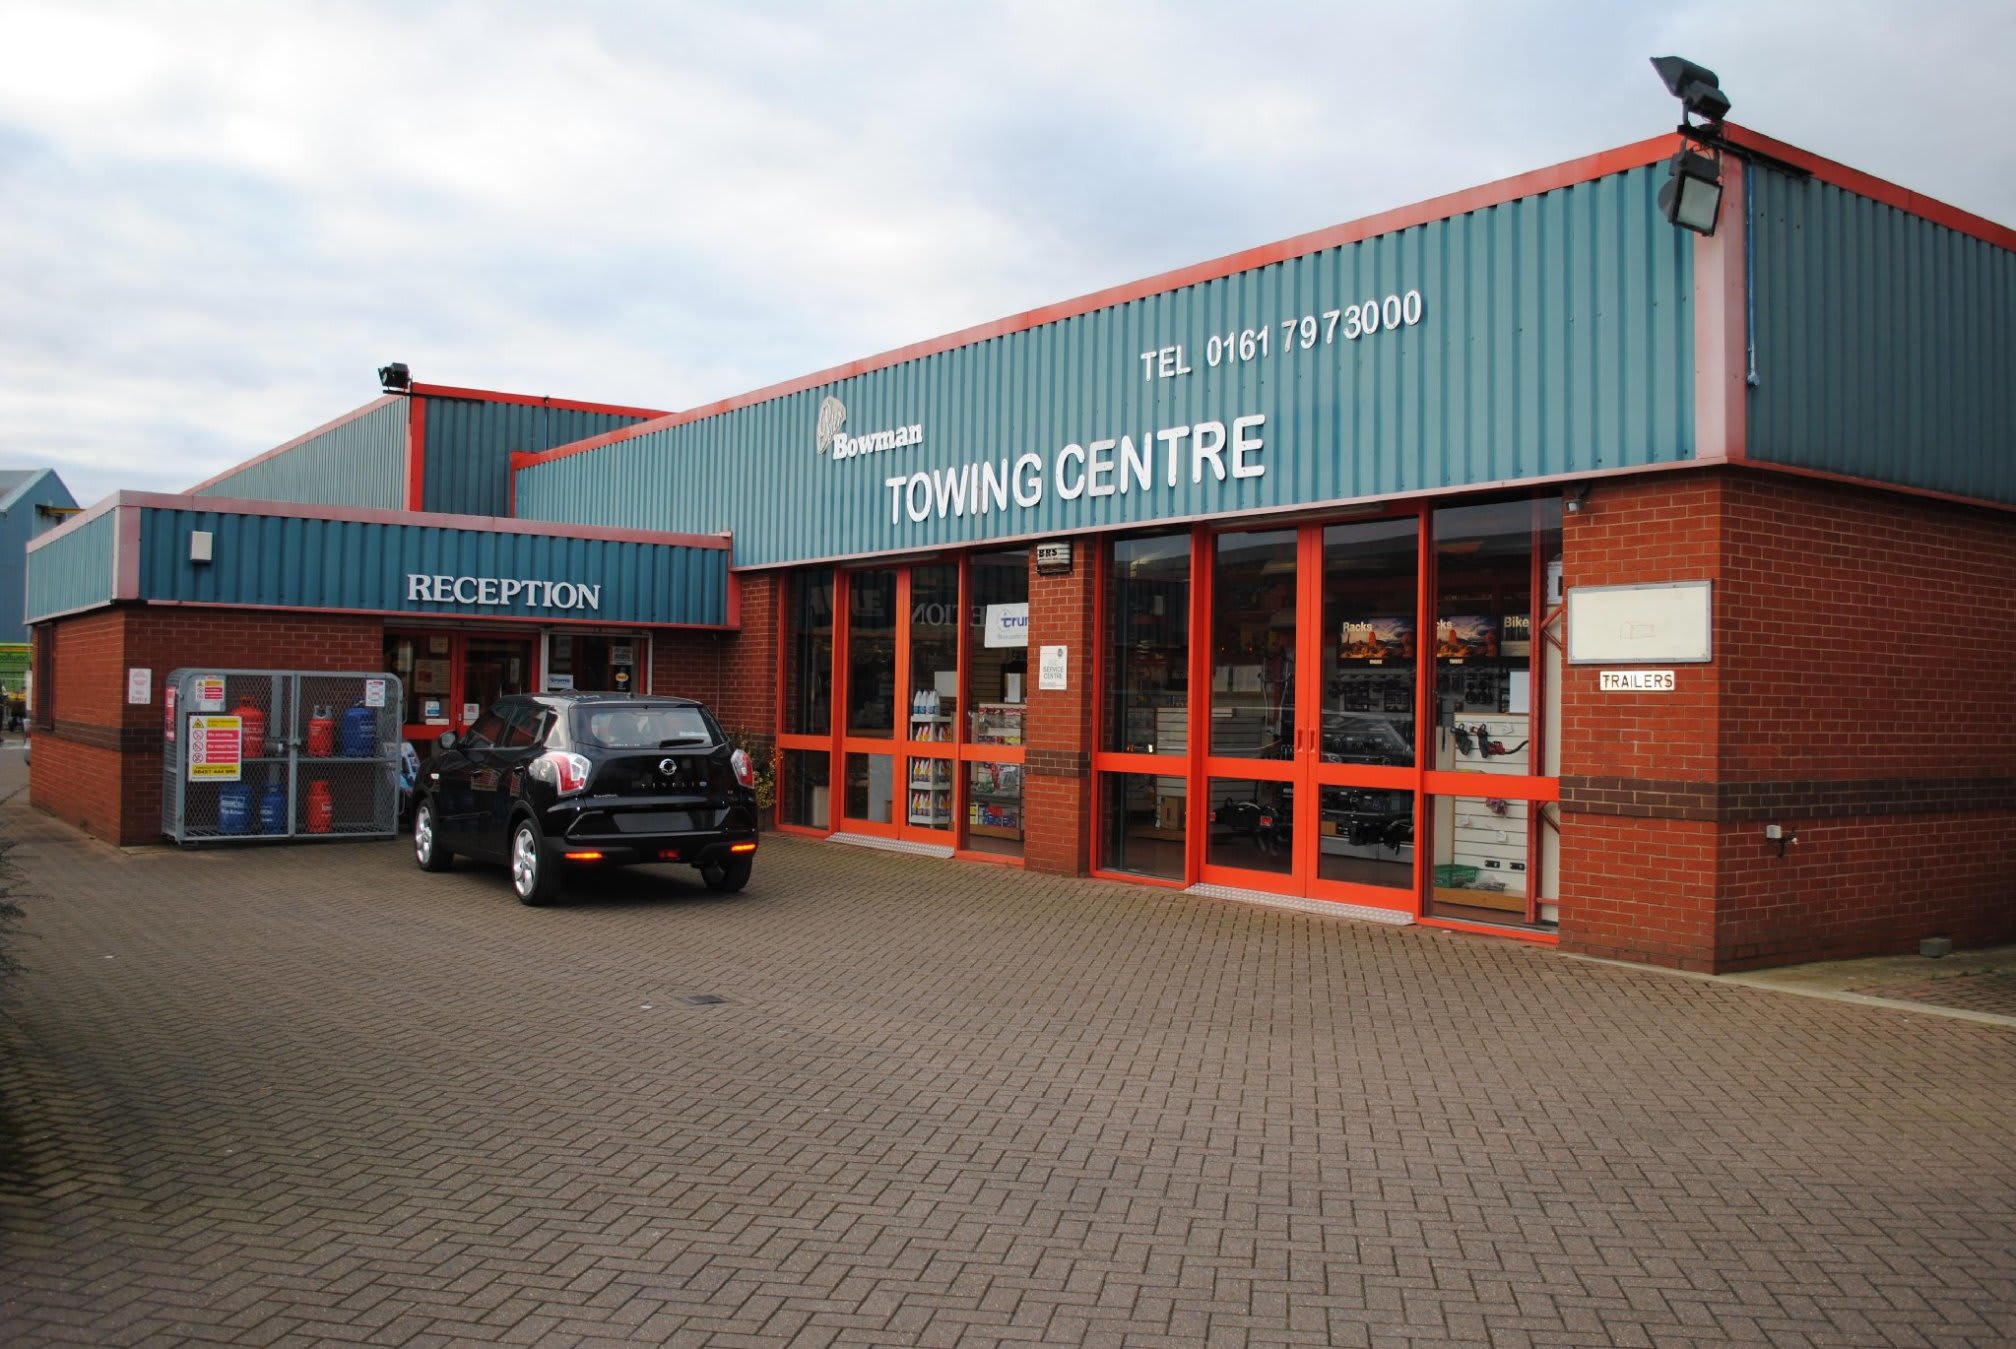 Peter Bowman Towing Centre Ltd Bury 01617 973000